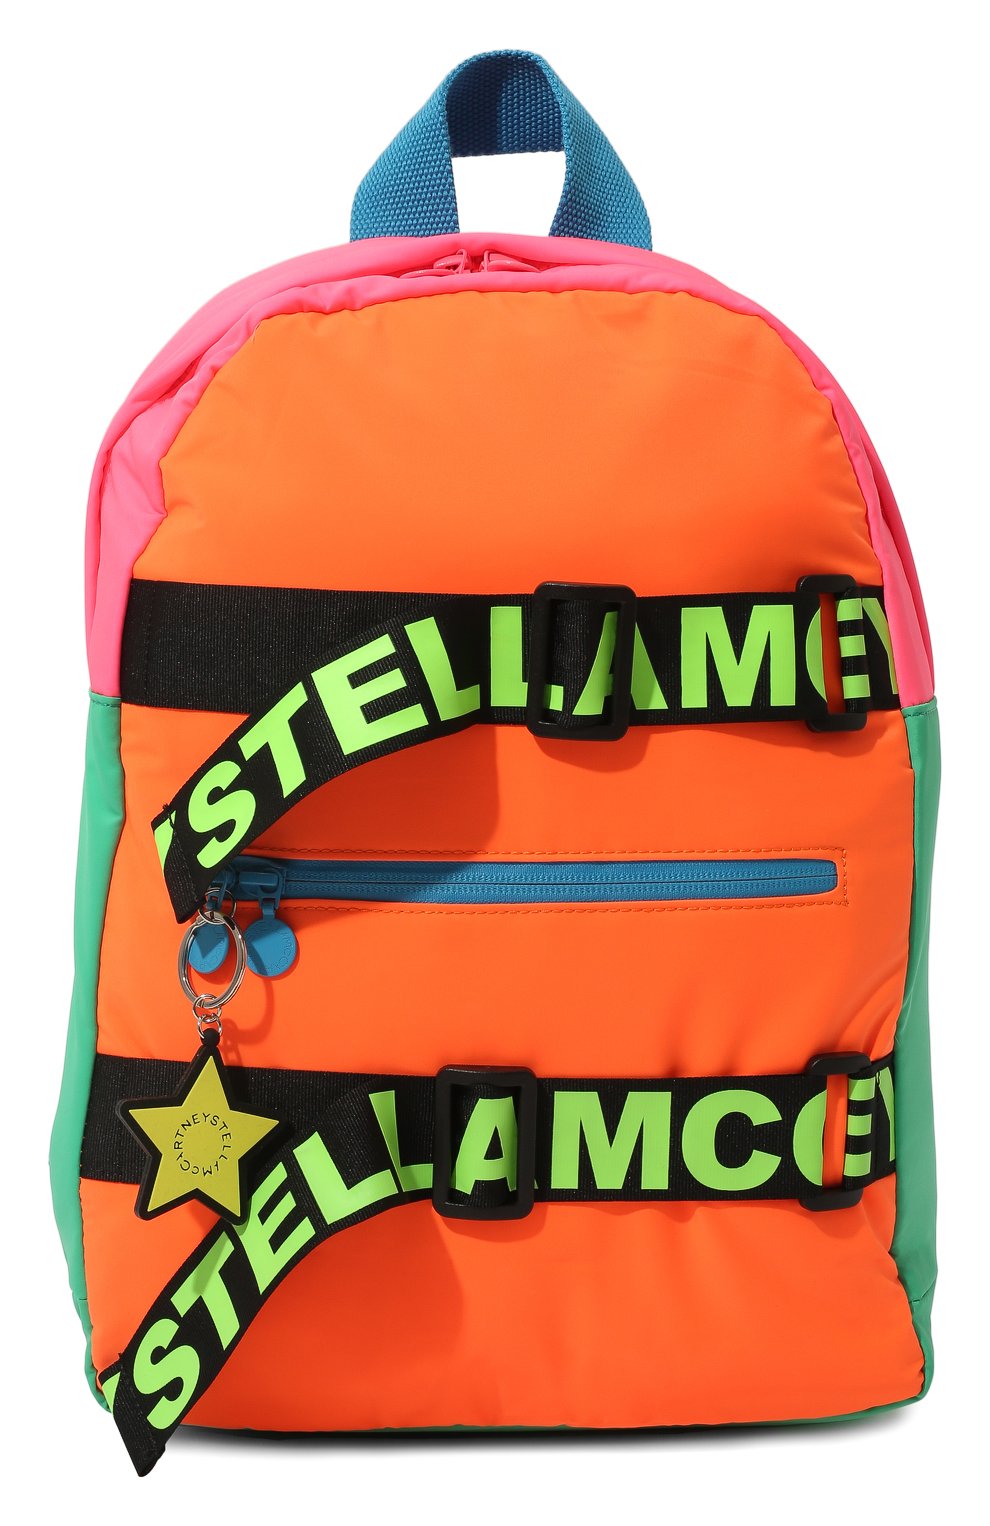 Детская рюкзак STELLA MCCARTNEY разноцветного цвета, арт. 8Q0AI8 | Фото 1 (Мате риал: Текстиль)